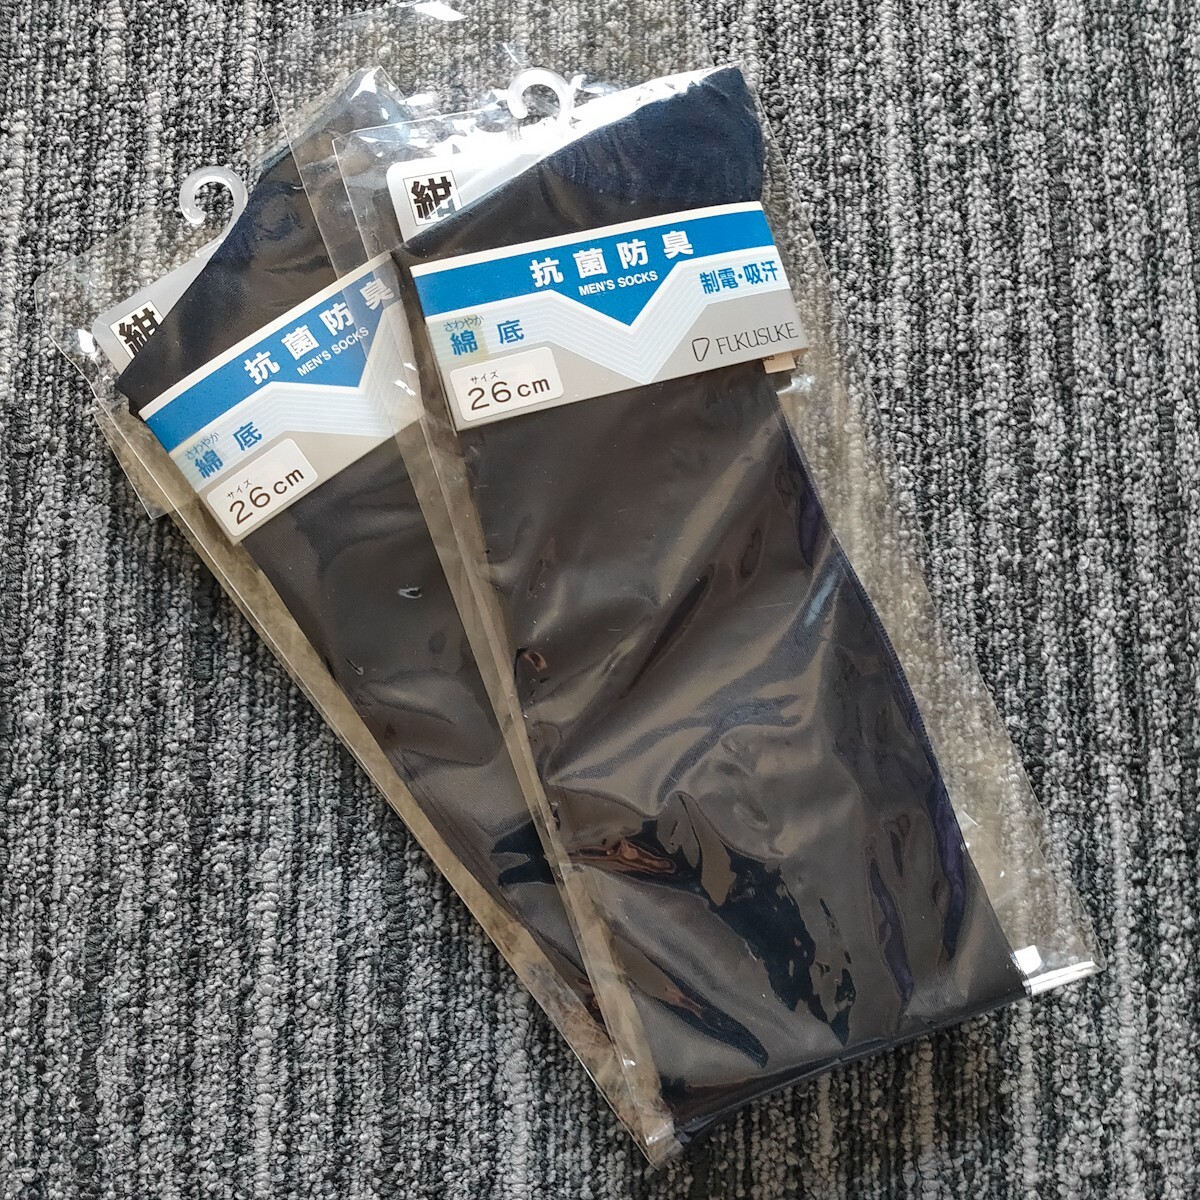 紺 未使用 福助 シースルー ハイソックス 26㎝ 2足セット ビジネス 靴下 ソックス ドレスソックス 日本製 レトロ スーツ メンズ の画像1